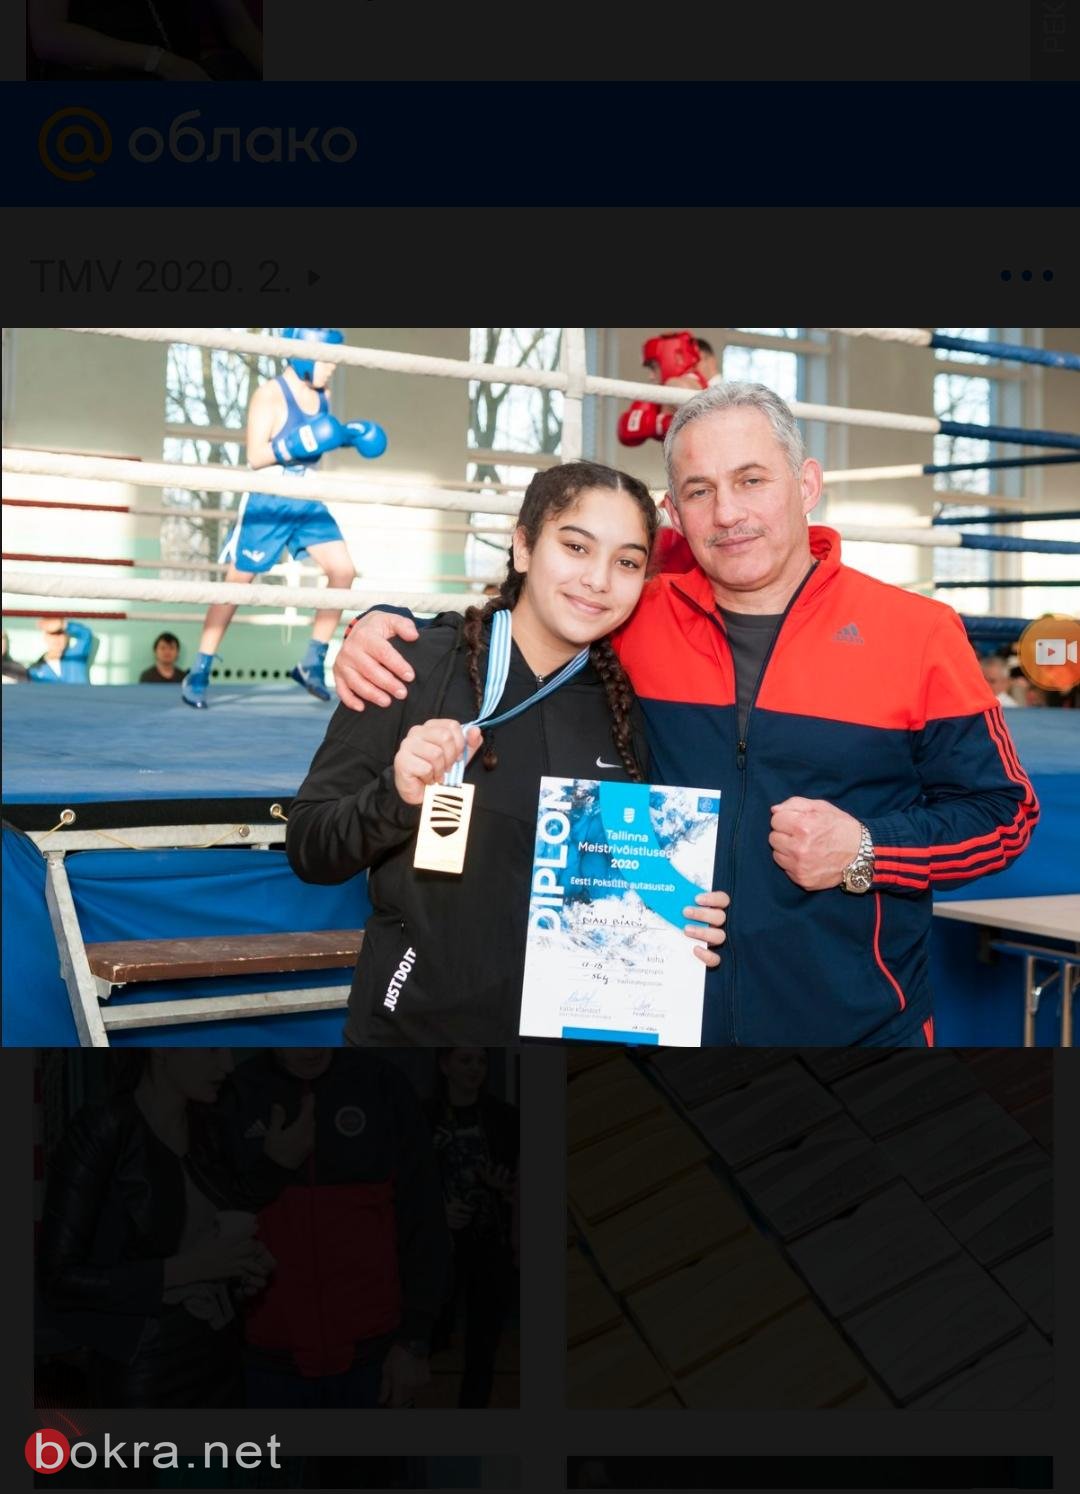 الملاكمة ديان بياضي تحصد المرتبة الأولى في بطولة أوروبا للناشئين في أستونيا-6